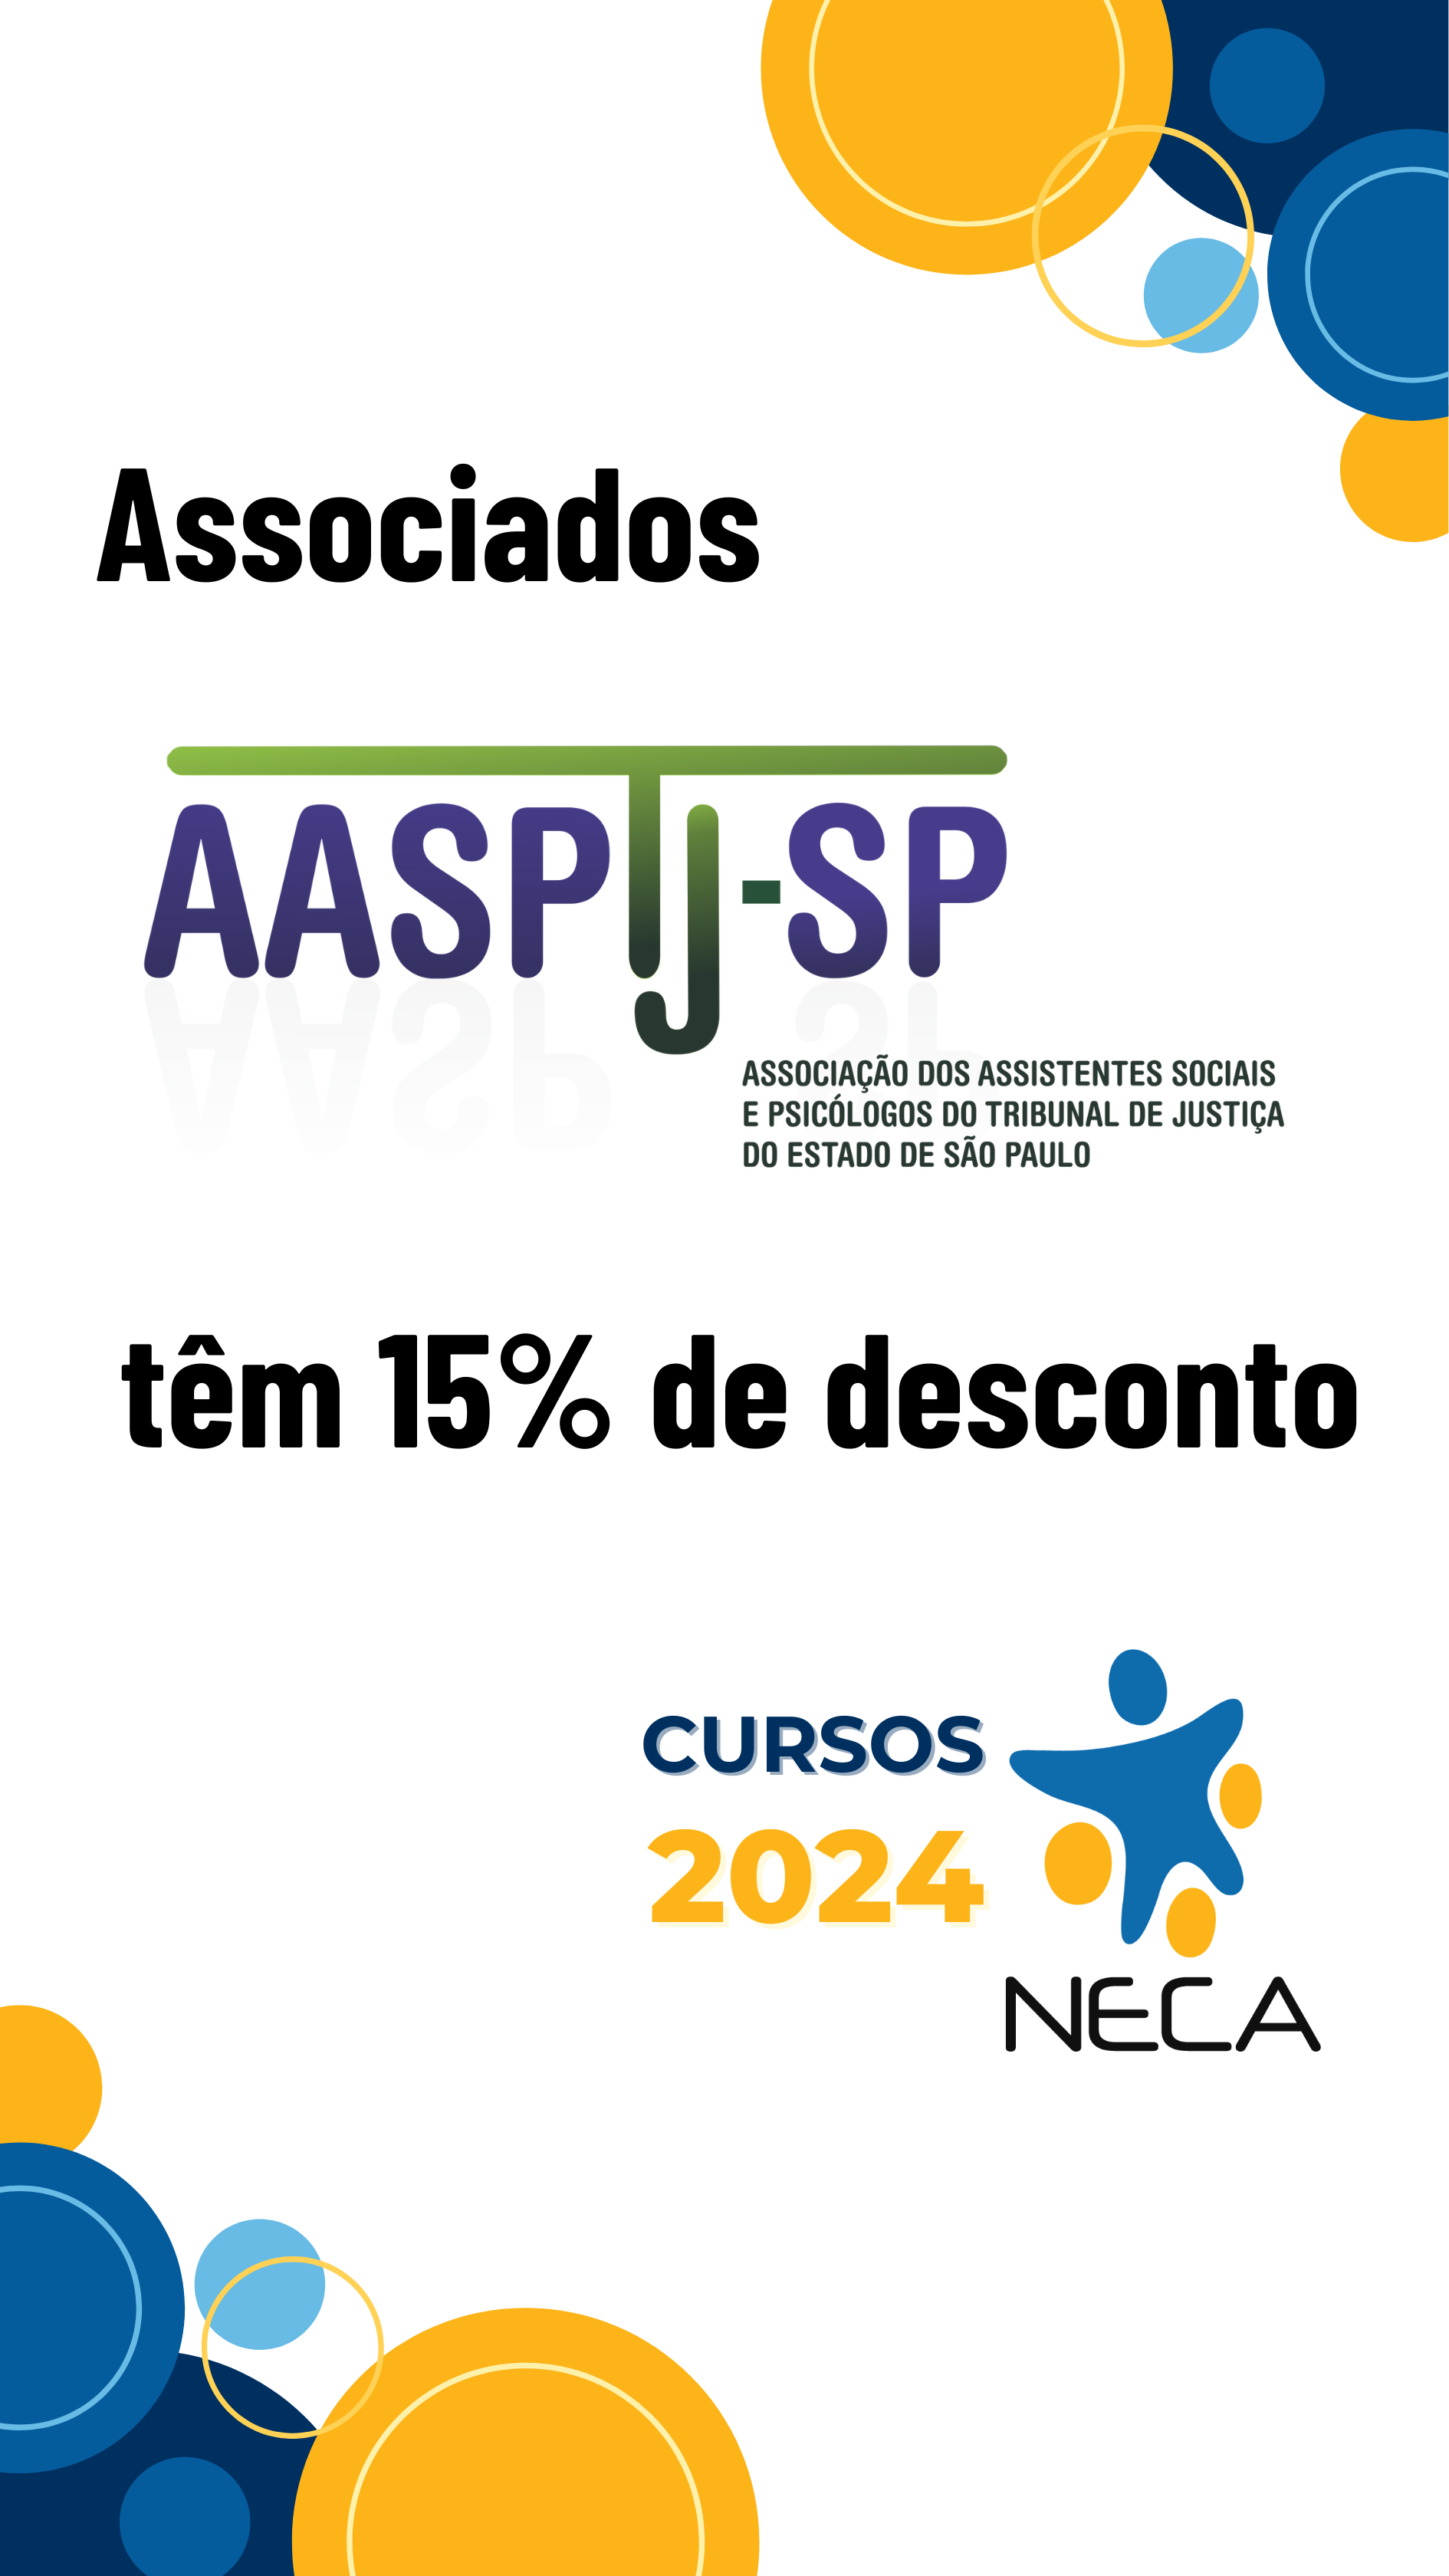 AASPTJ-SP / Cursos 2024 NECA